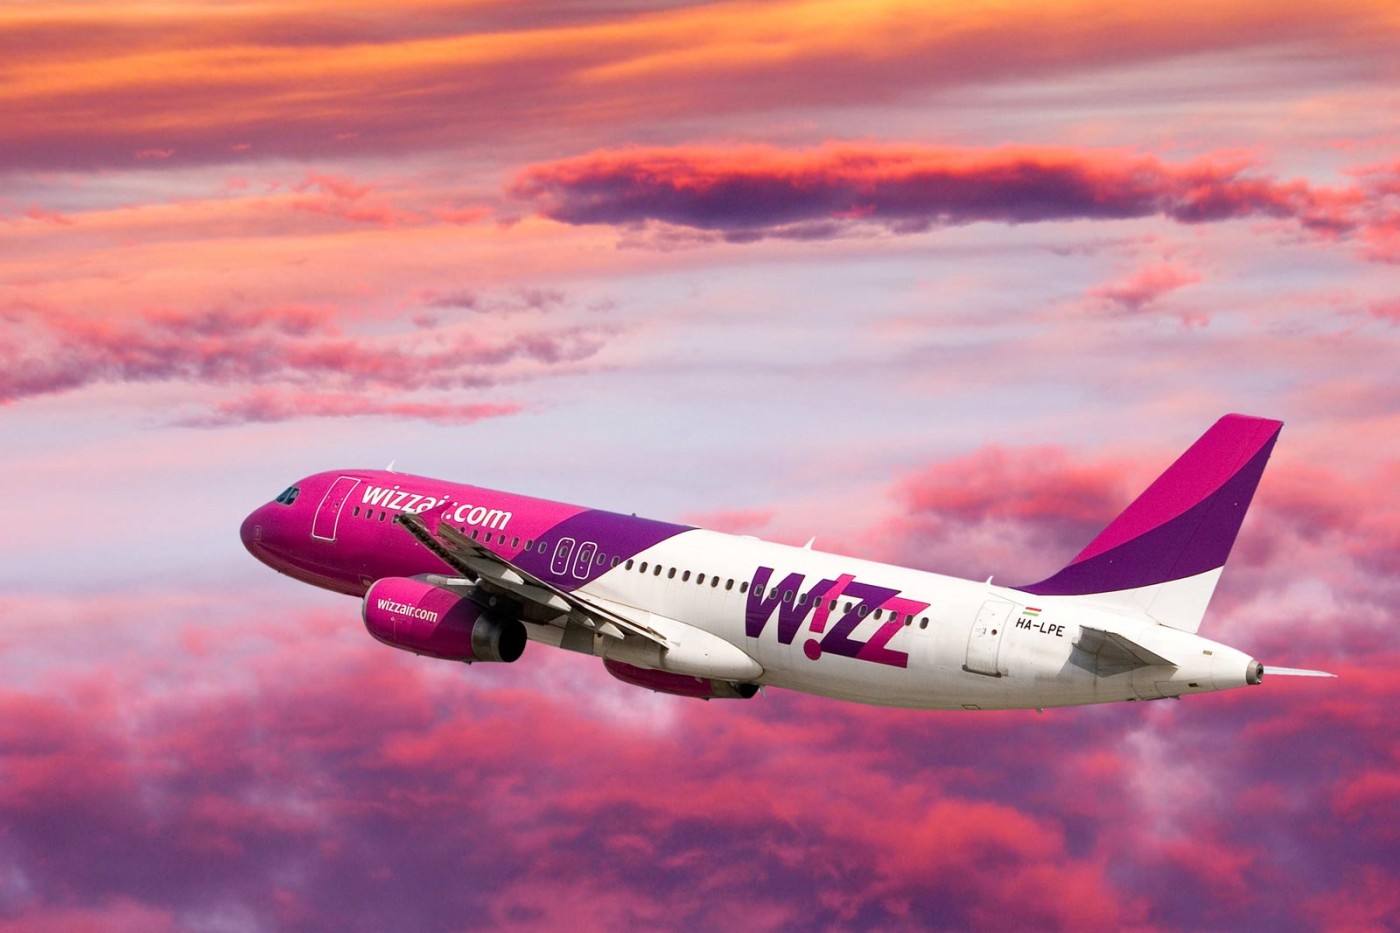 С 20 апреля авиакомпания "Wizz Air" прекращает свою деятельность на территории Украины